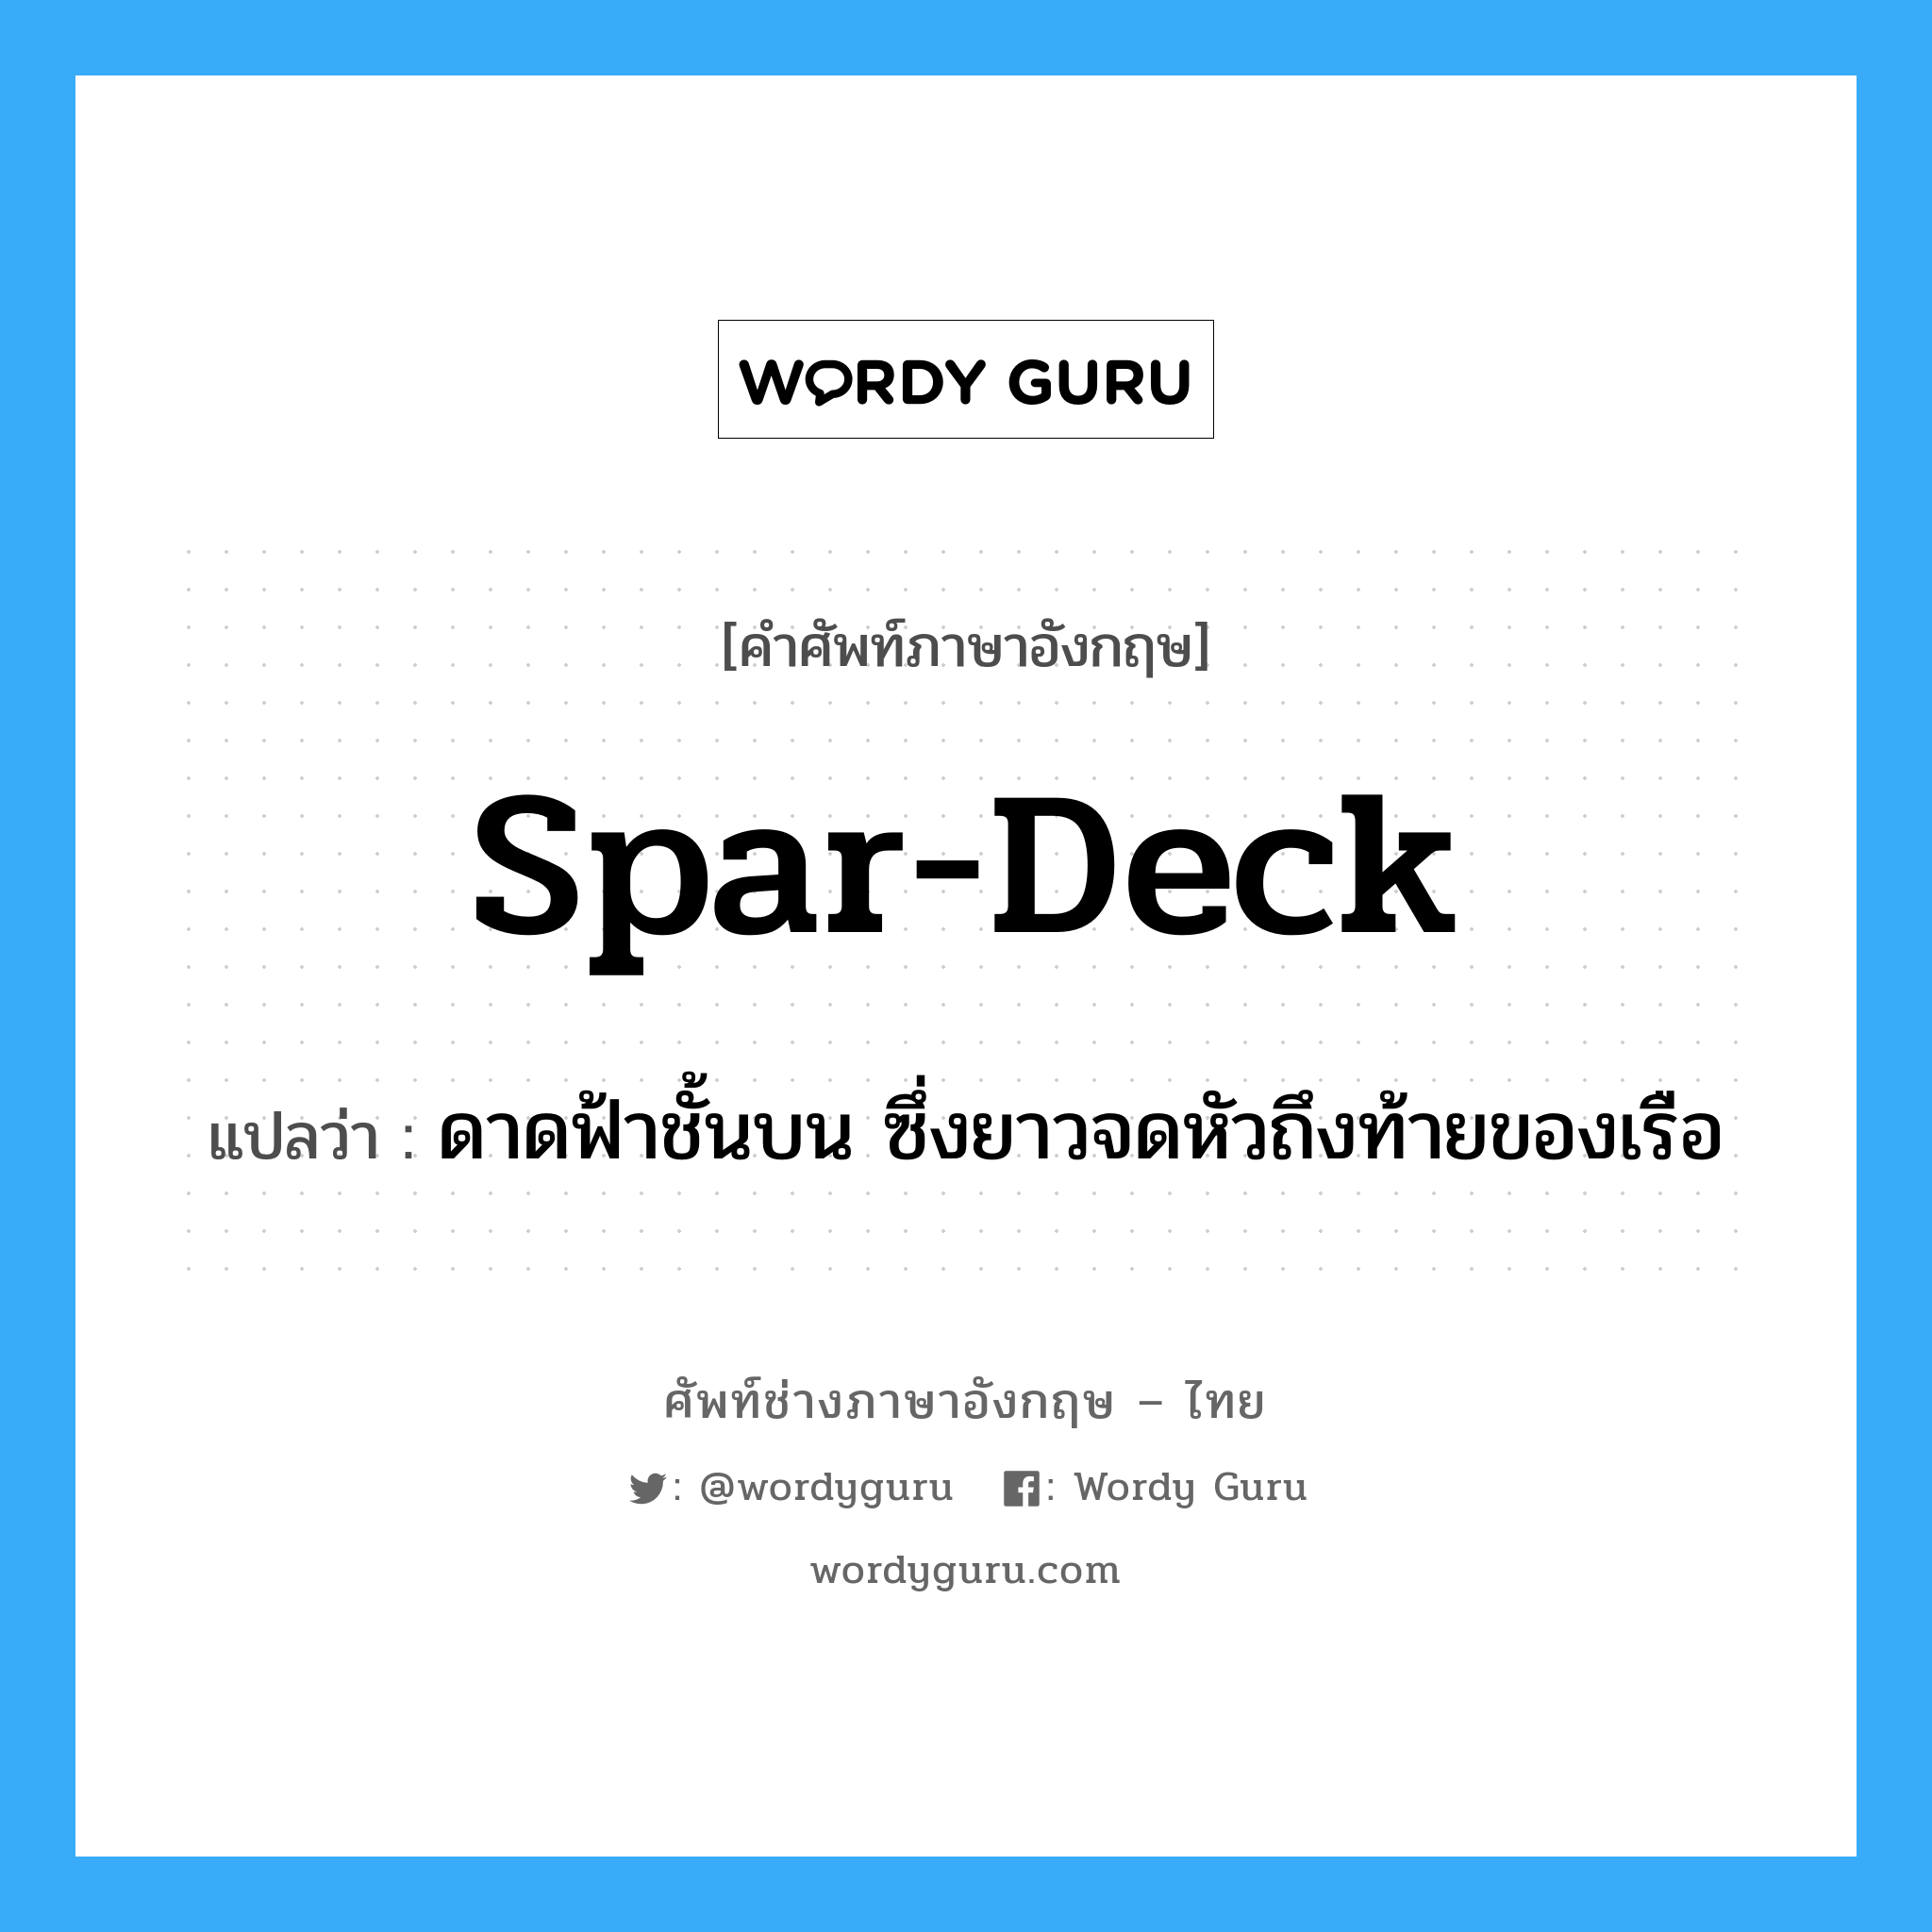 spar deck แปลว่า?, คำศัพท์ช่างภาษาอังกฤษ - ไทย spar-deck คำศัพท์ภาษาอังกฤษ spar-deck แปลว่า ดาดฟ้าชั้นบน ซึ่งยาวจดหัวถึงท้ายของเรือ